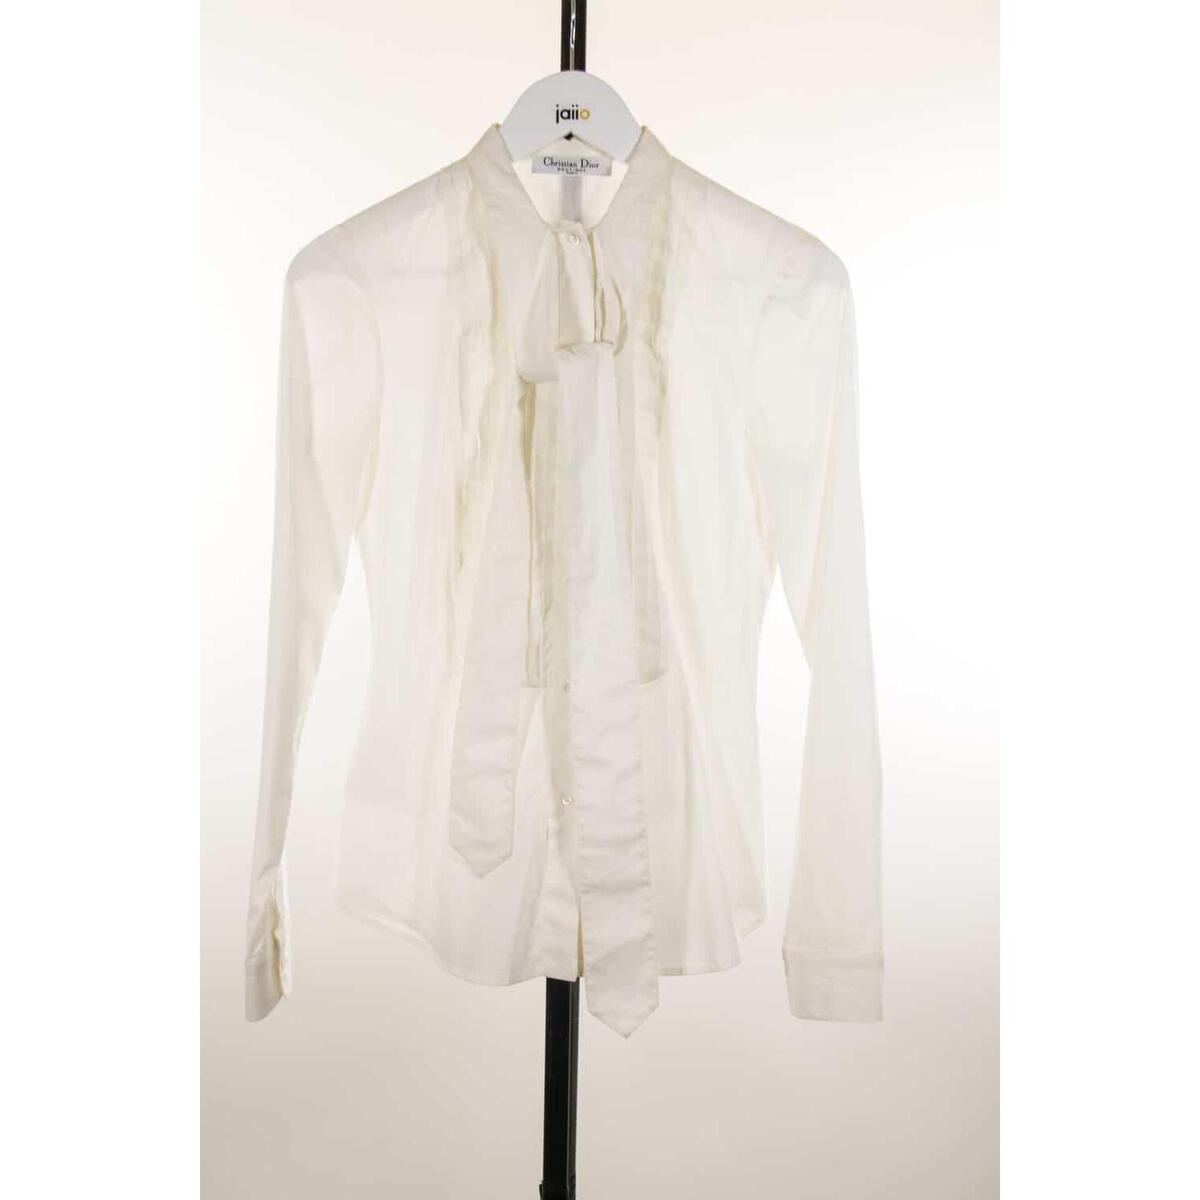 Vêtements Femme ZSC11C-CUBDPPCS-LONG SLEEVE-SPORT SHIRT Top en soie Blanc